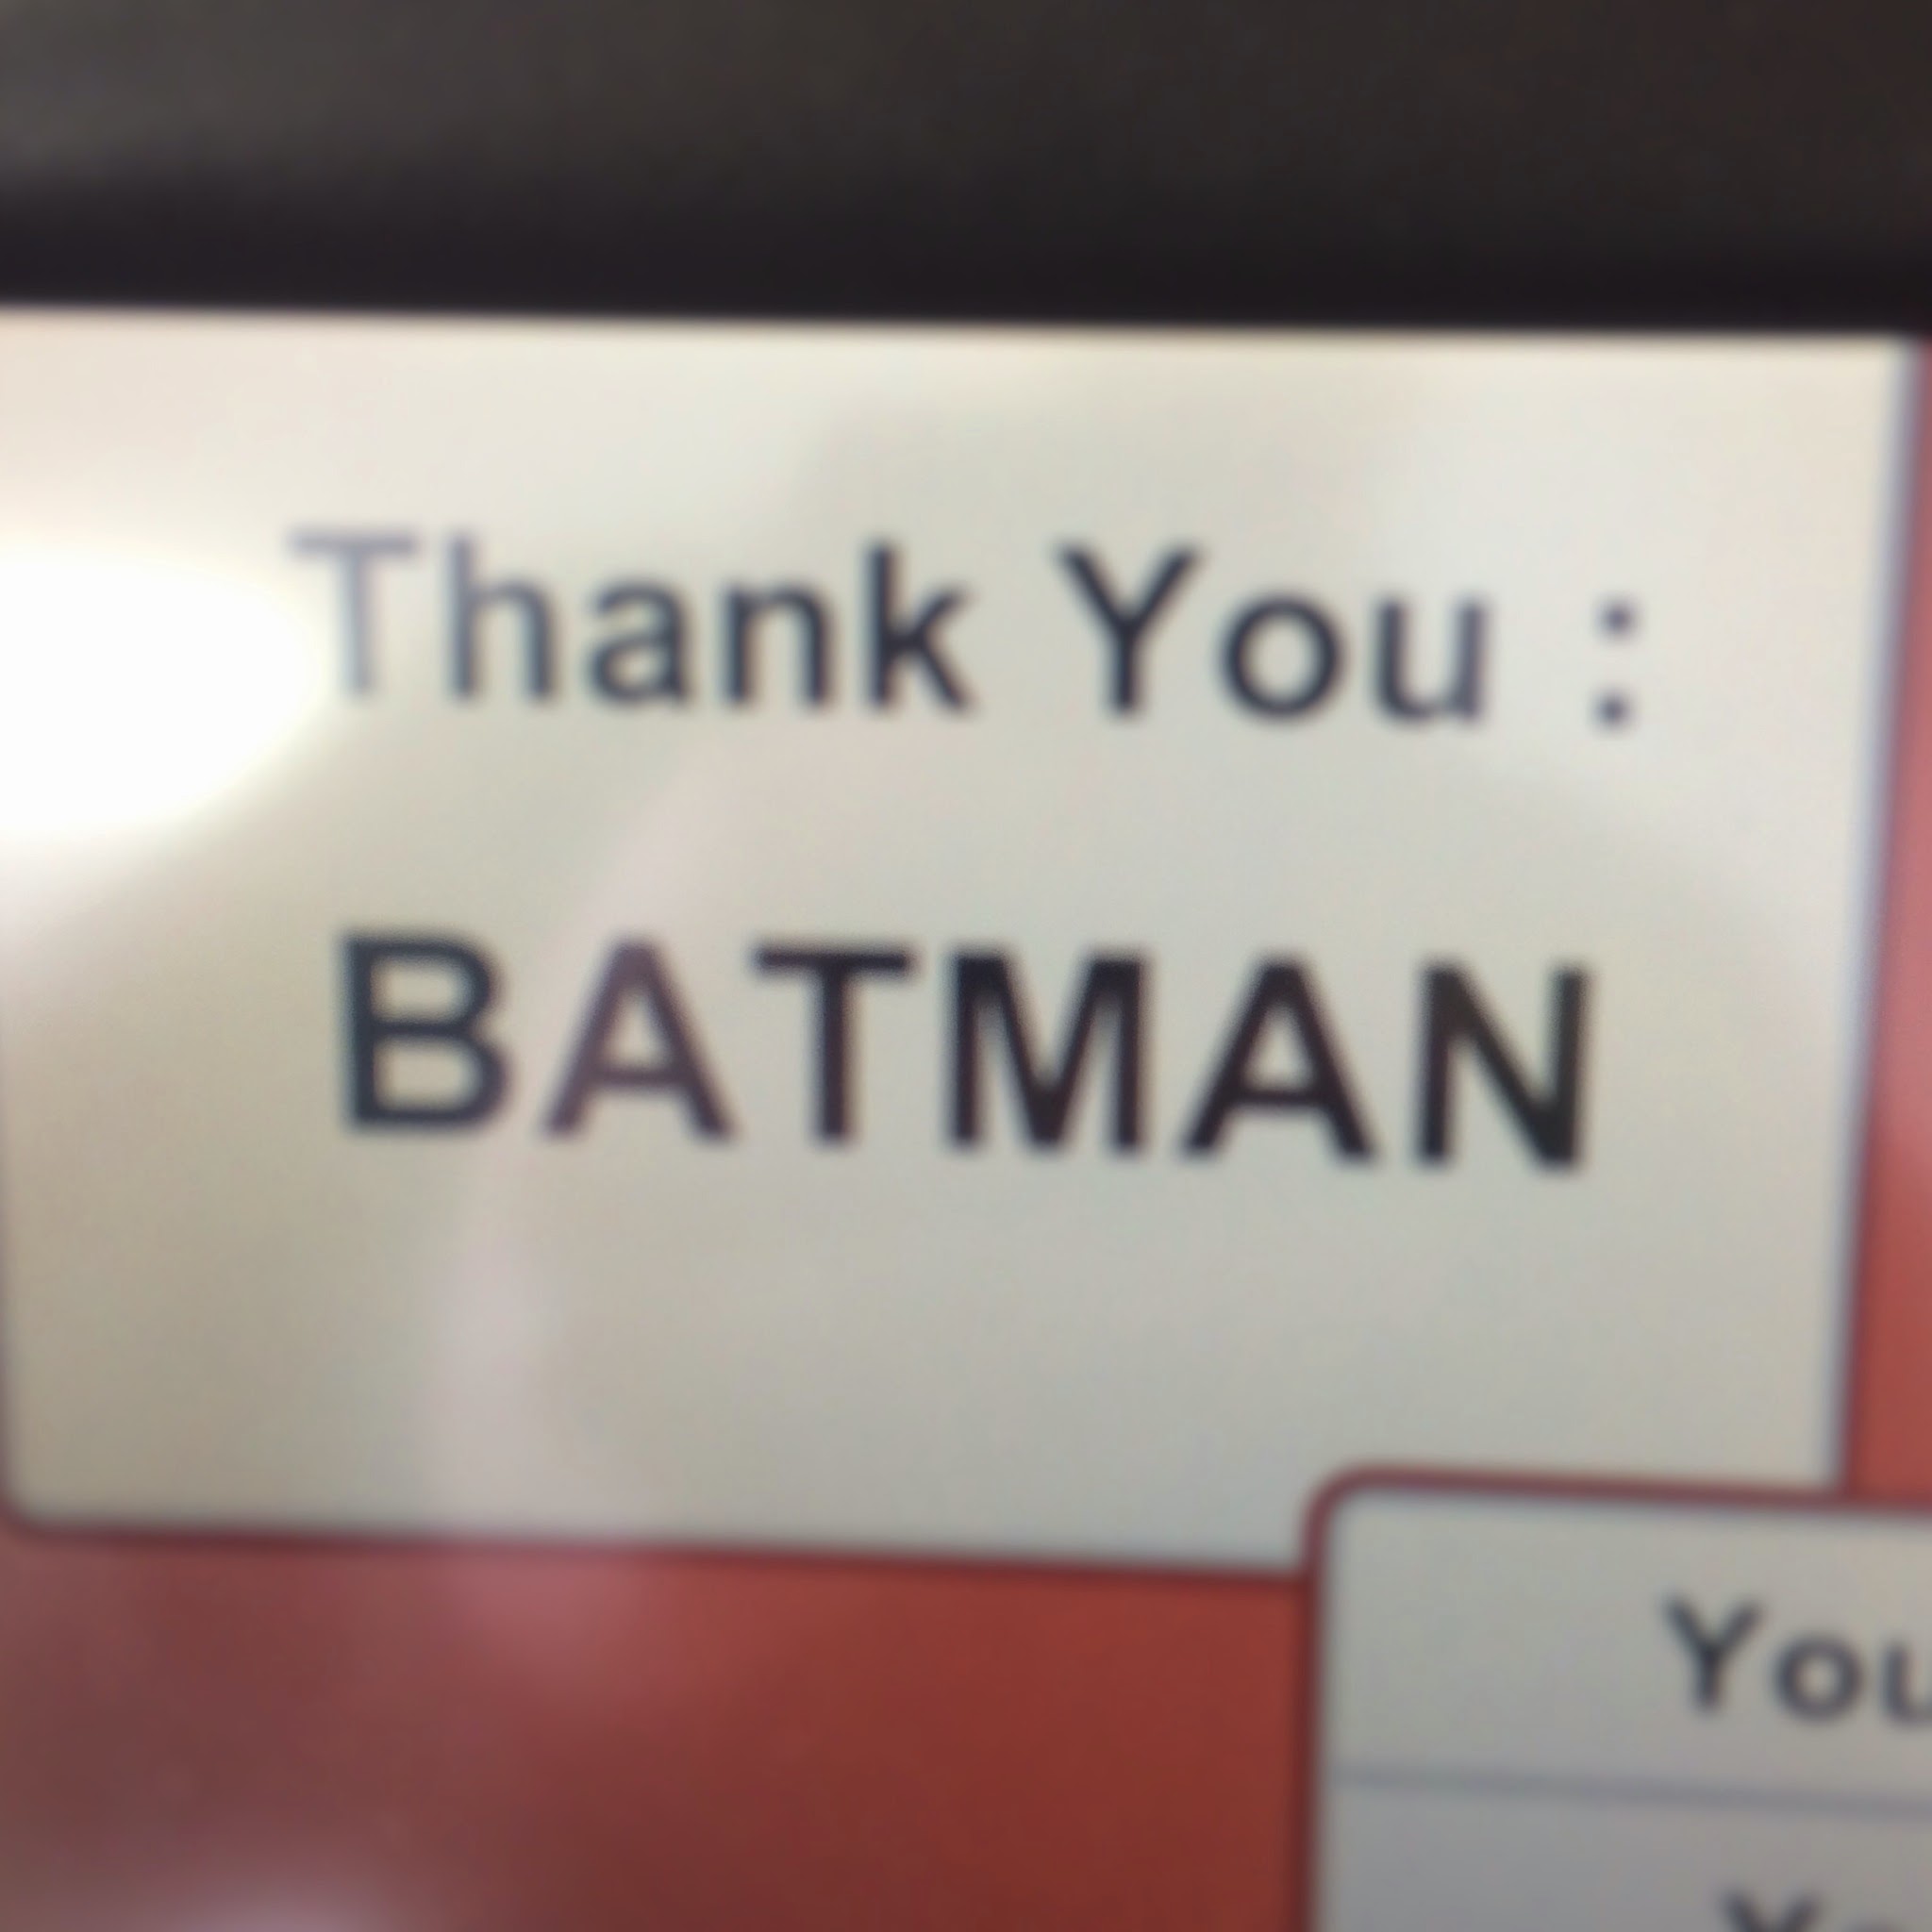 Thank you Batman